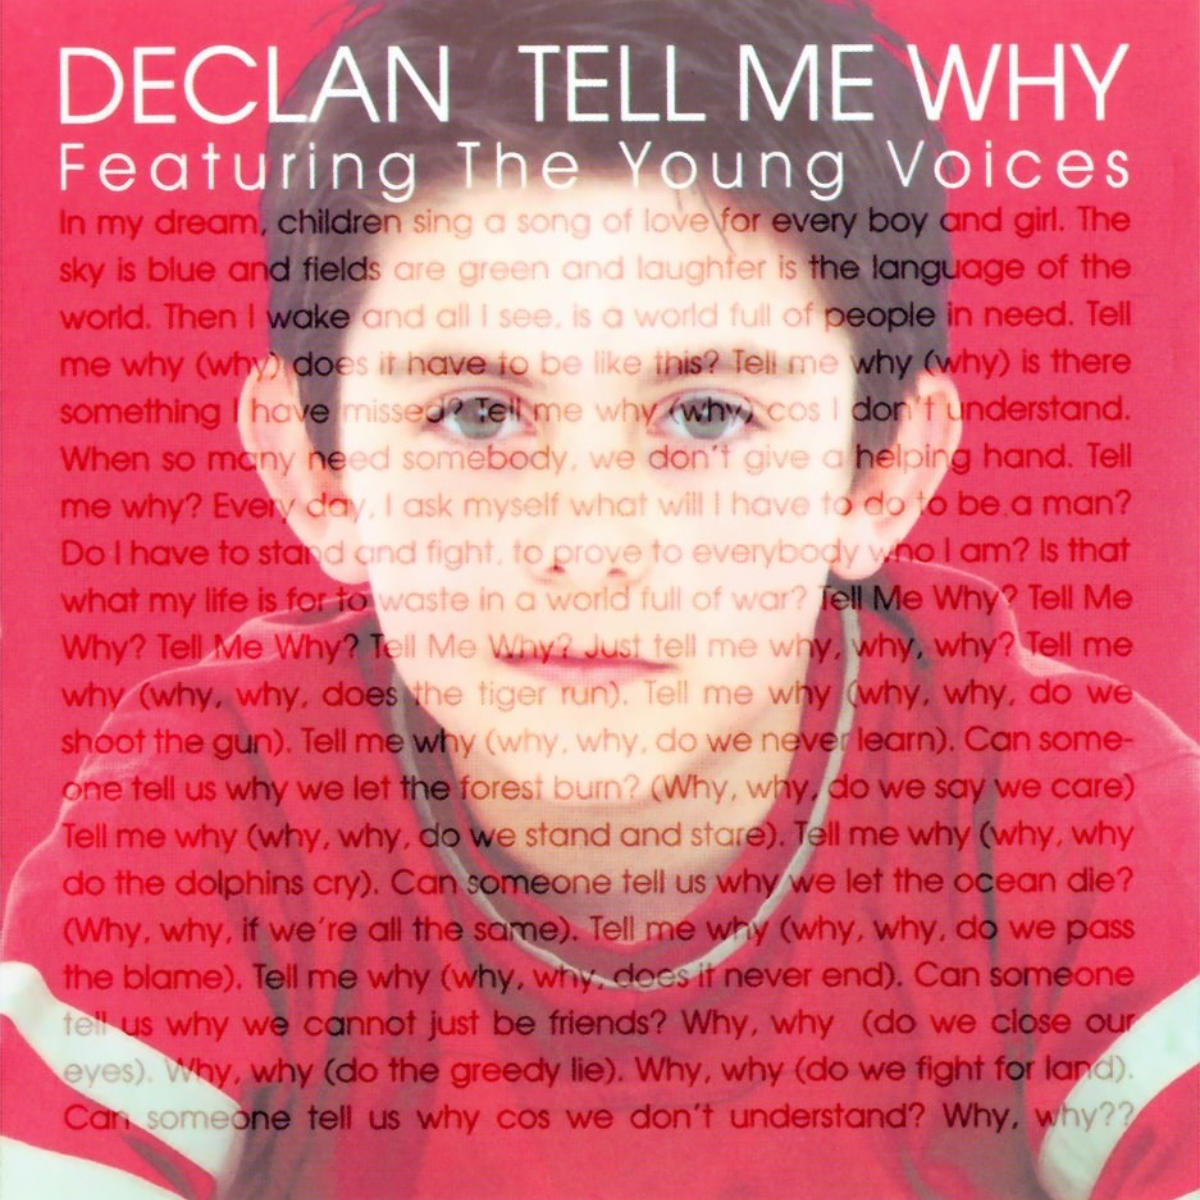 Tell me why Деклан Гэлбрейт. Tell me why песня Declan Galbraith. Tell me why песня. Declan Galbraith "tell me why?" Перевод.